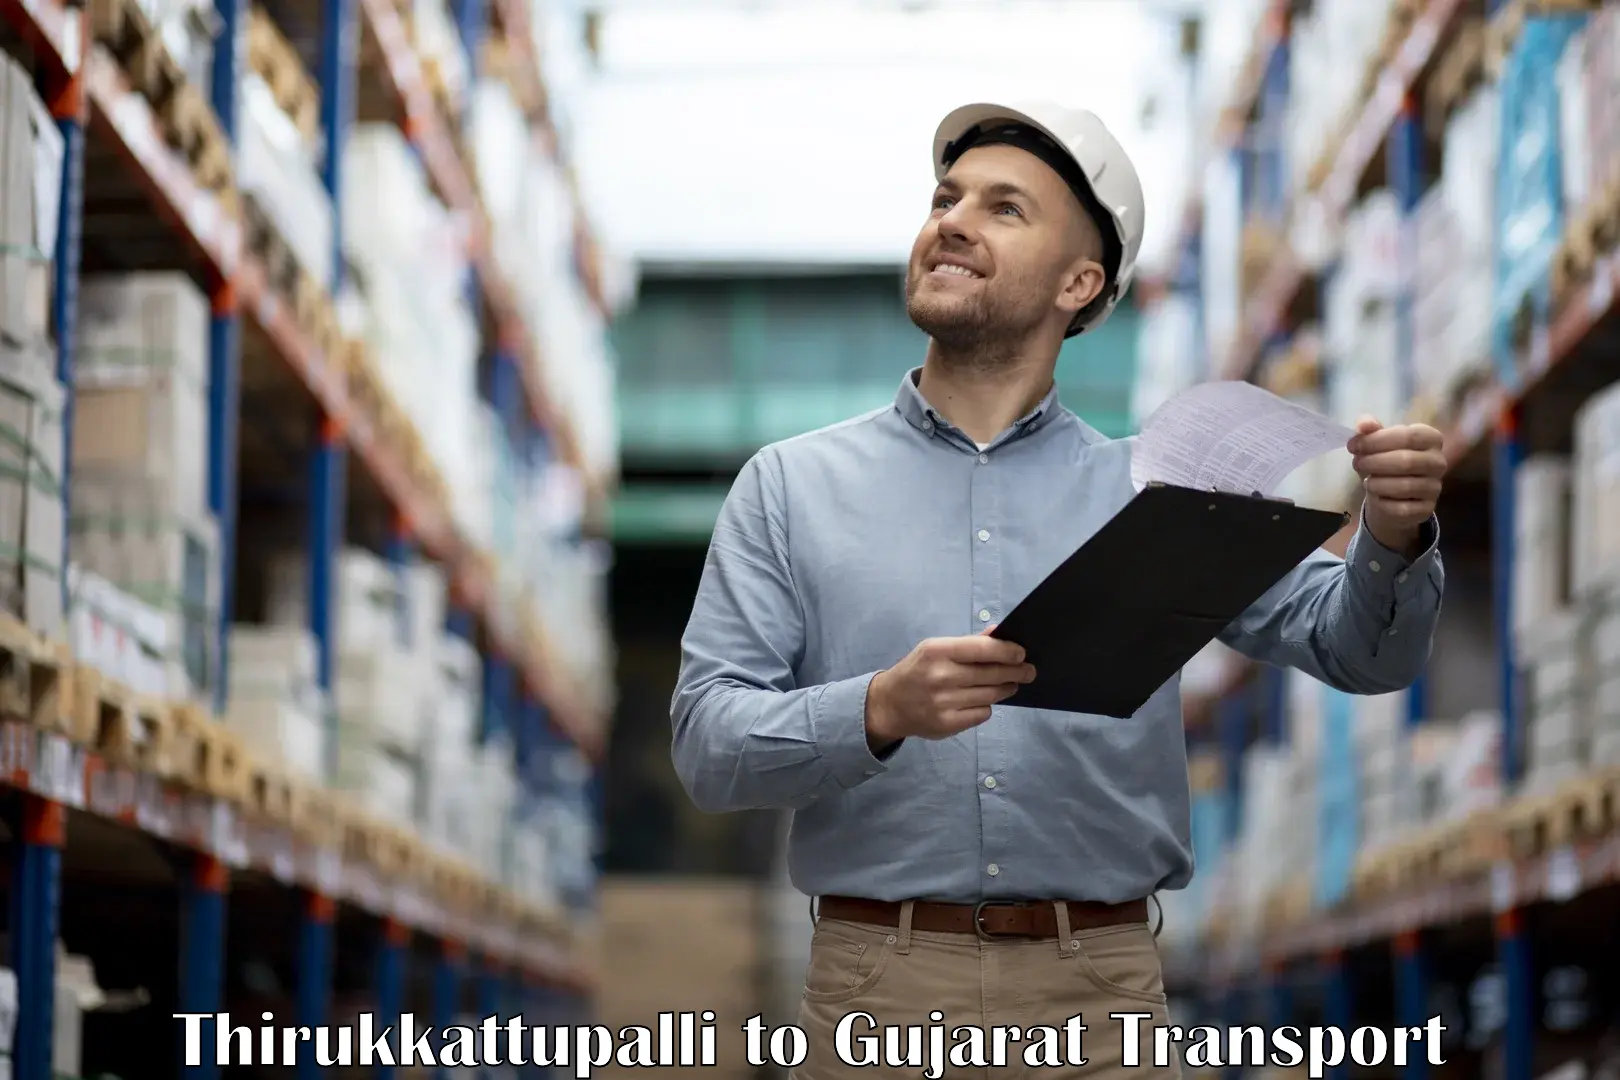 Truck transport companies in India Thirukkattupalli to Dang